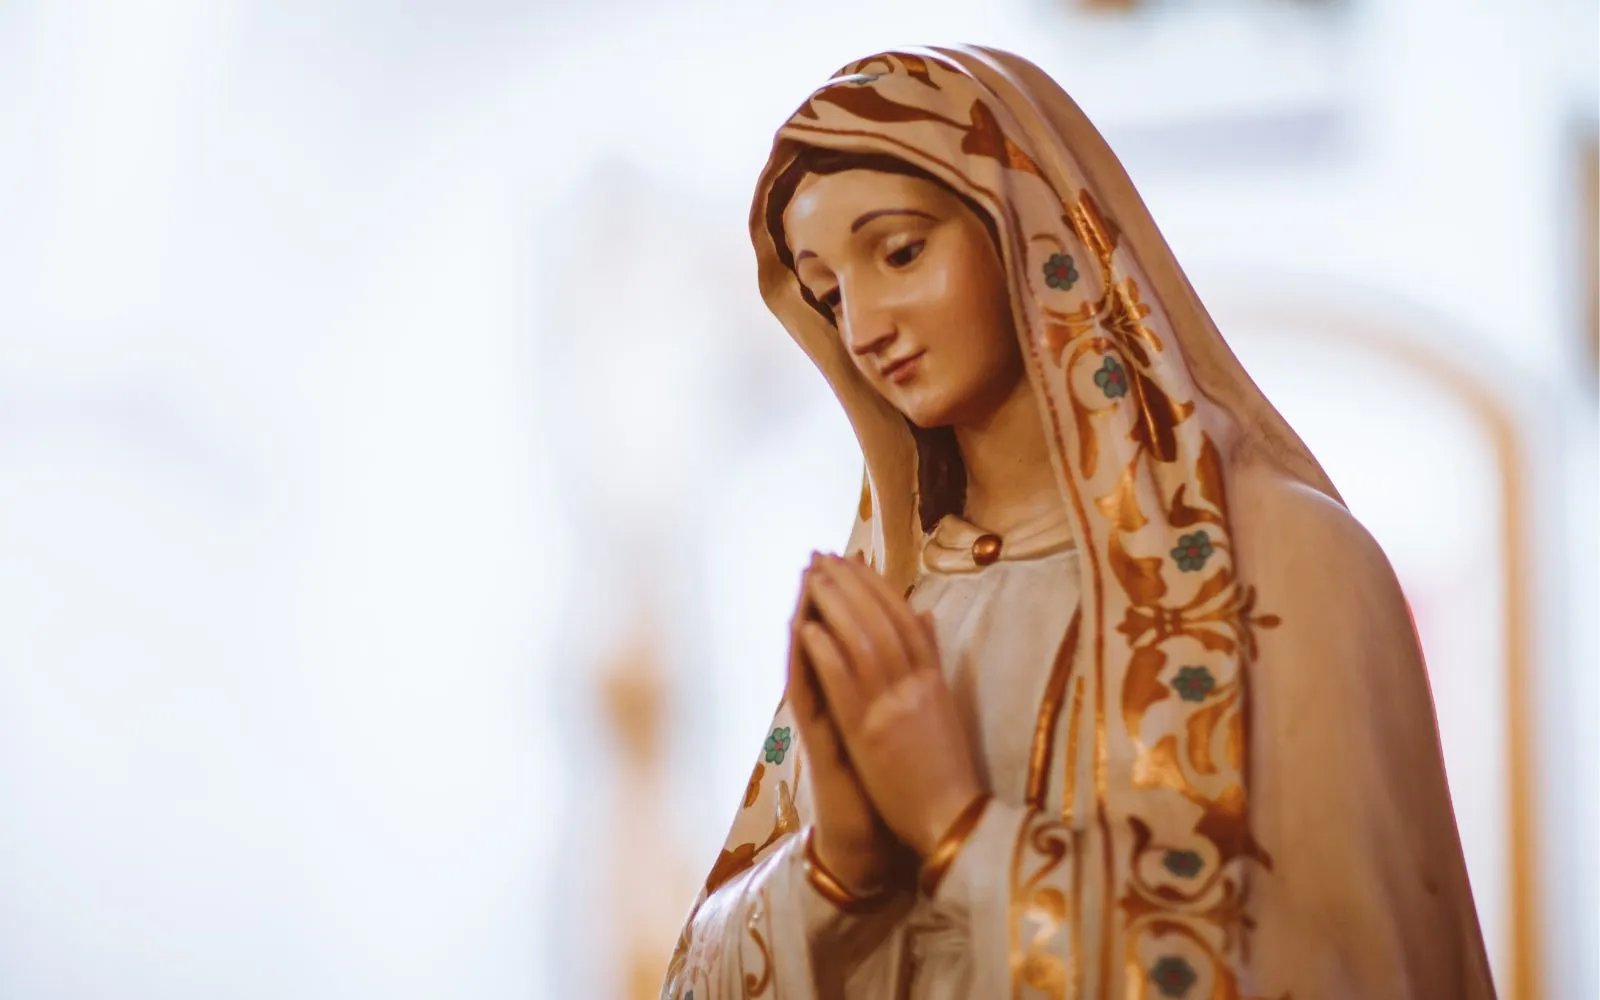 Imagen de la Virgen María.?w=200&h=150